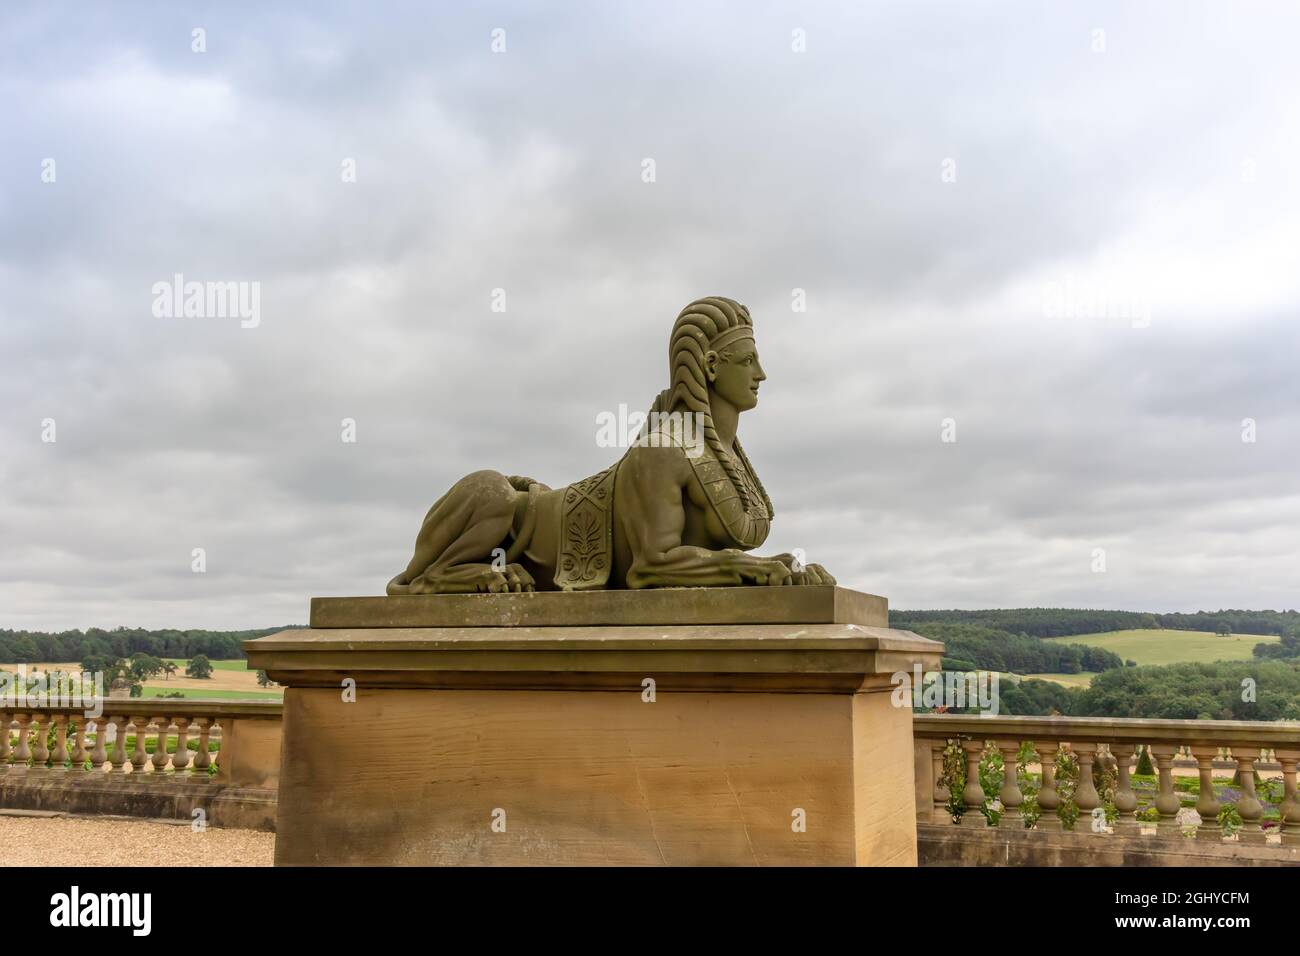 Sculpture antique en pierre sculptée d'un sphinx, célèbre monument dépeint le corps d'un lion avec une tête humaine dans les jardins de Harewood House près de Leeds. Banque D'Images